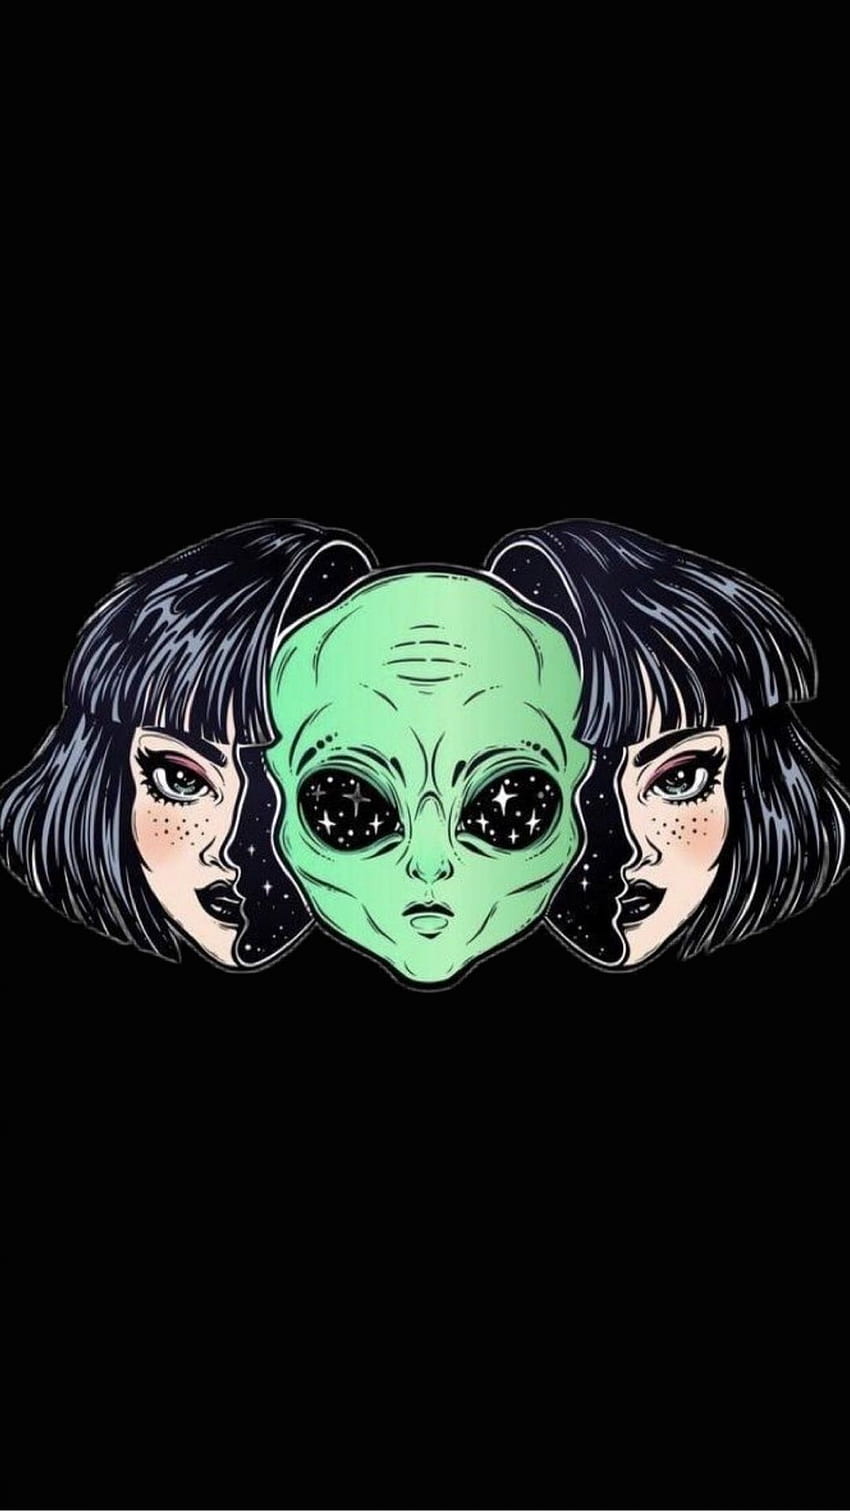 Alien girl by ceilingcake on DeviantArt